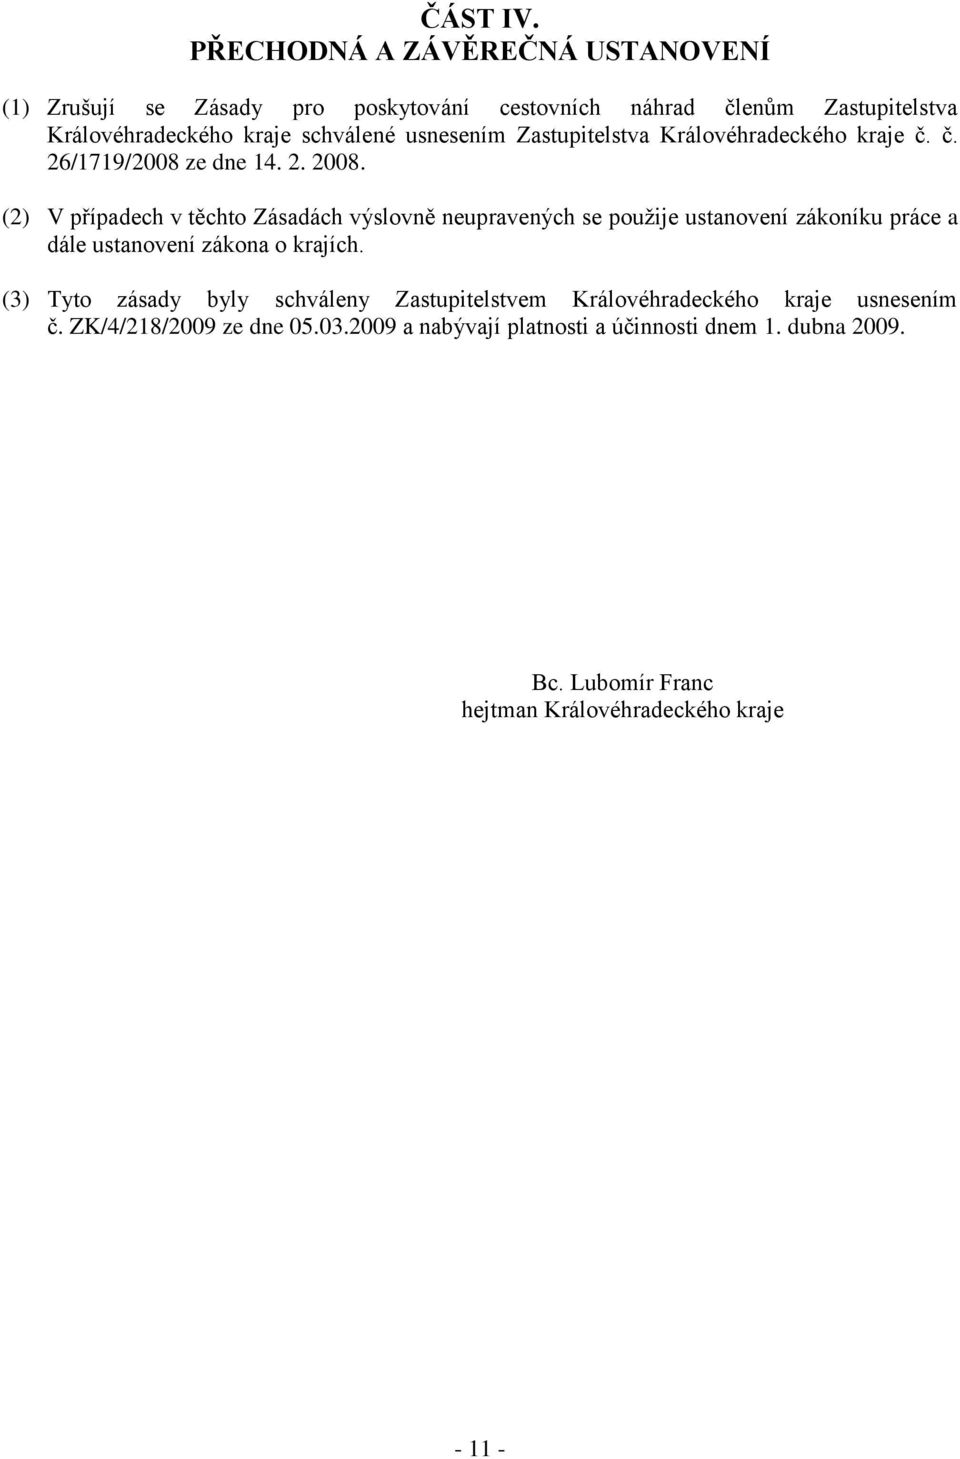 usnesením Zastupitelstva Královéhradeckého kraje č. č. 26/1719/2008 ze dne 14. 2. 2008.